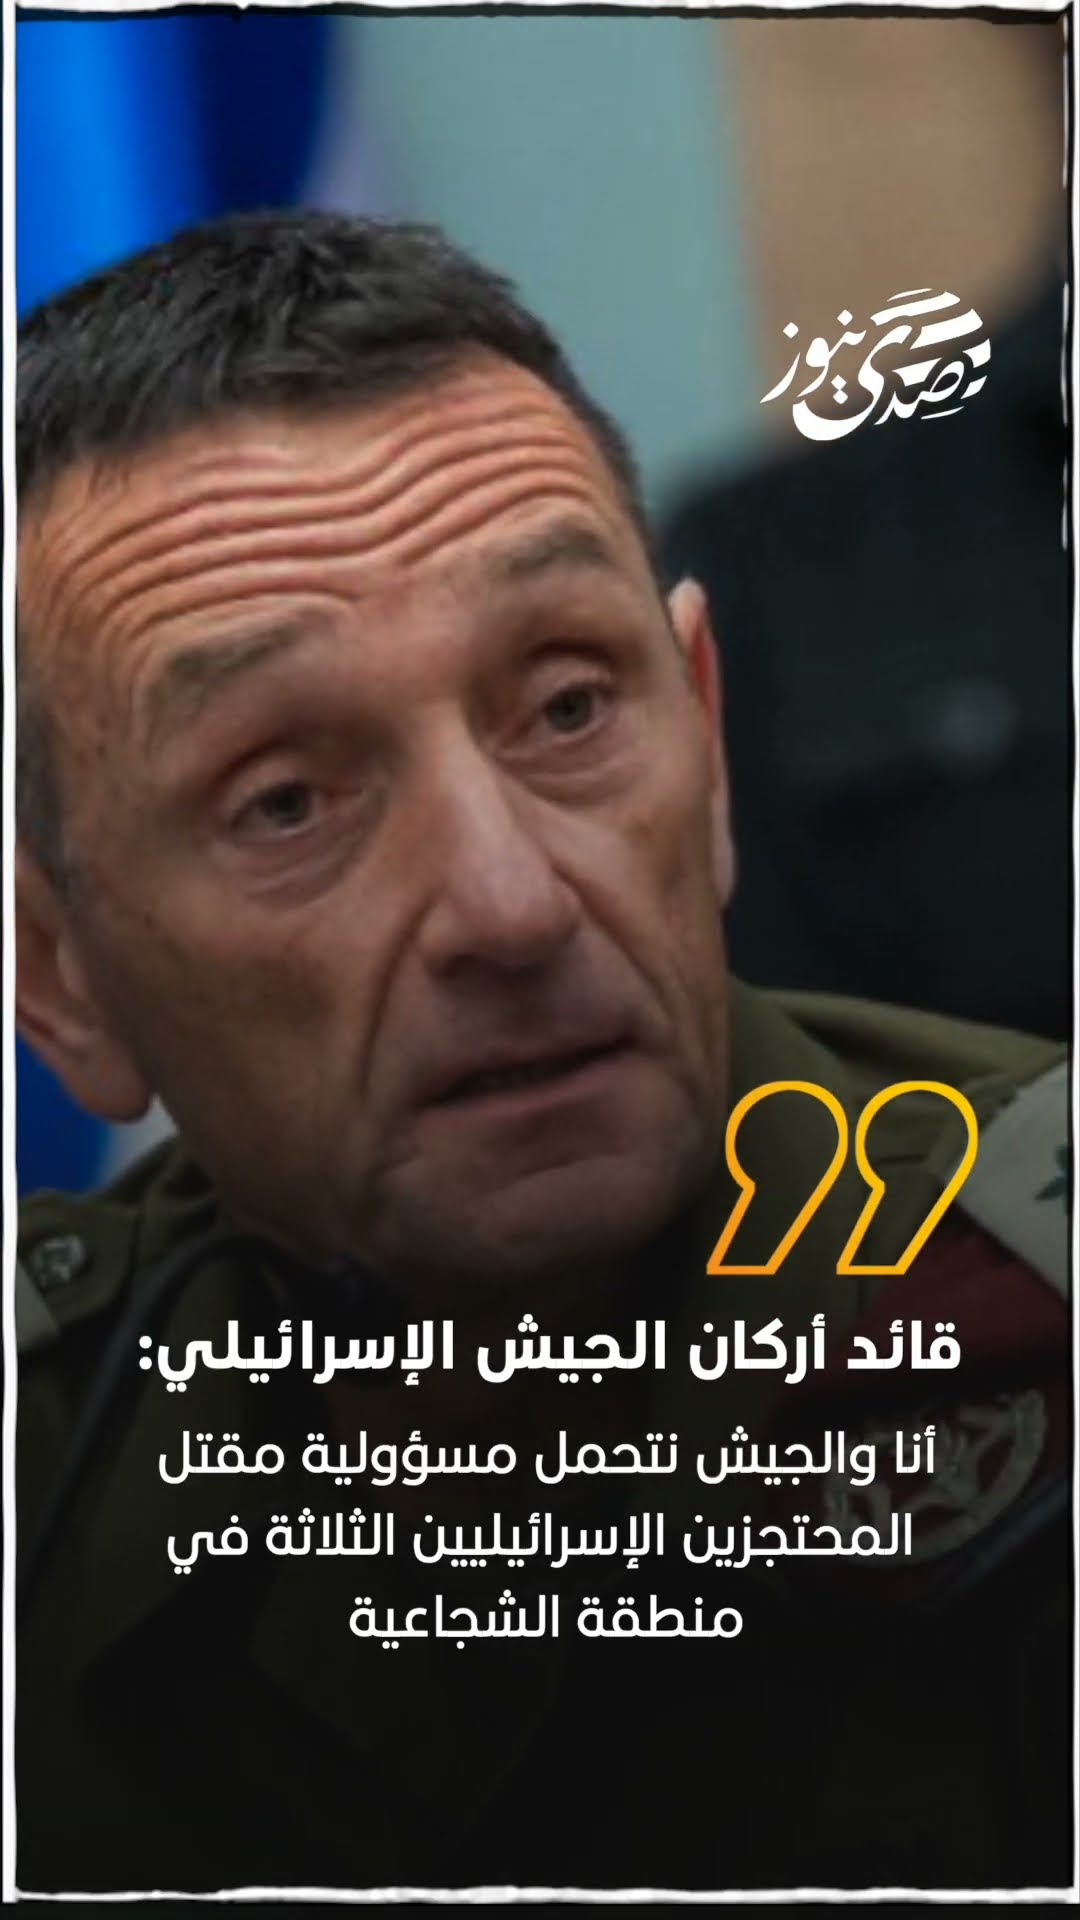 صدى نيوز | قائد أركان الجيش الإسرائيلي: أنا والجيش نتحمل مسؤولية